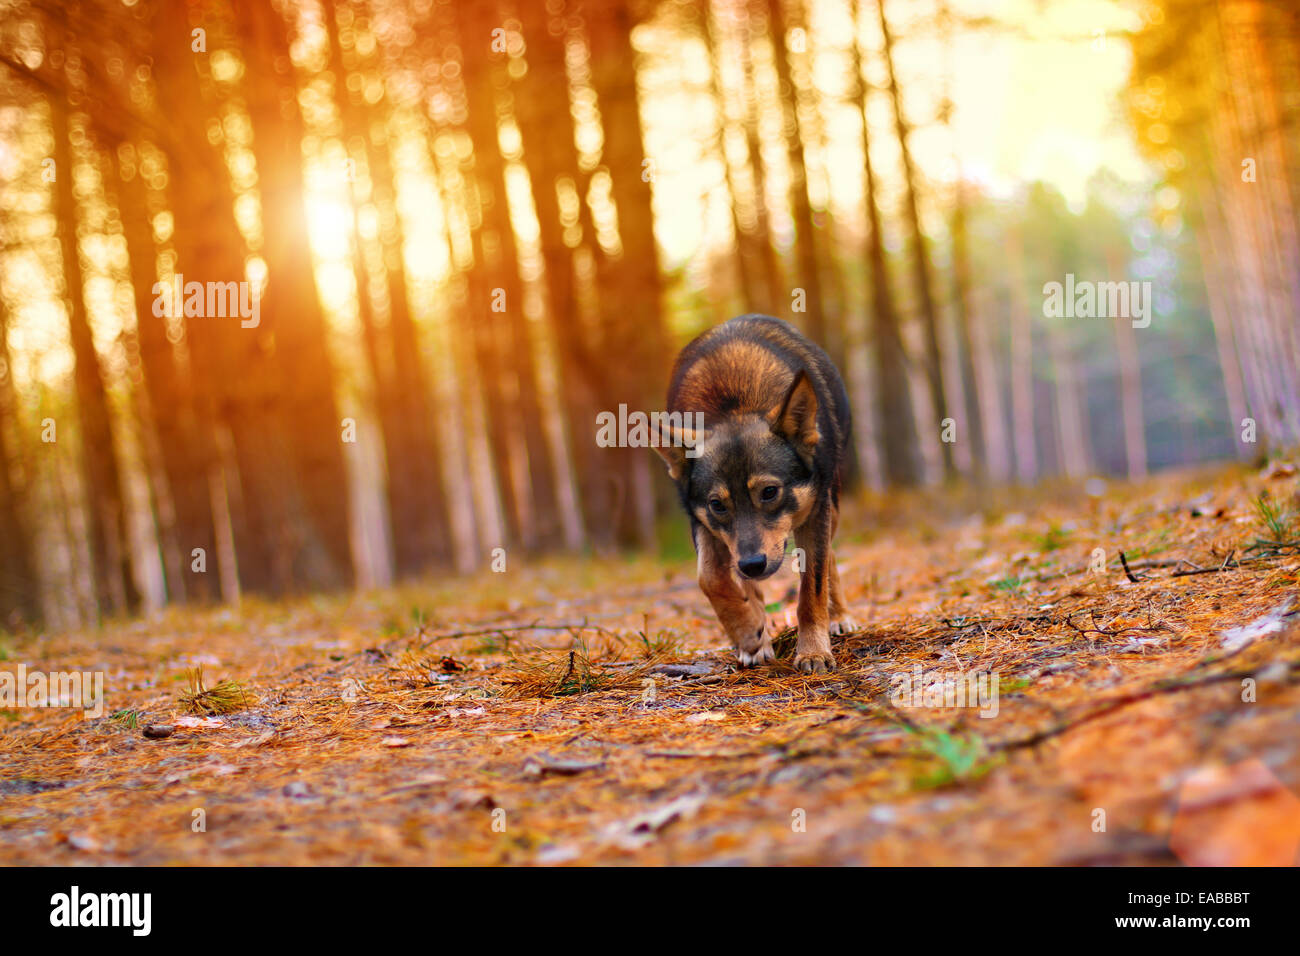 Cane a camminare nella foresta al tramonto. Orizzonte inclinato. Foto Stock